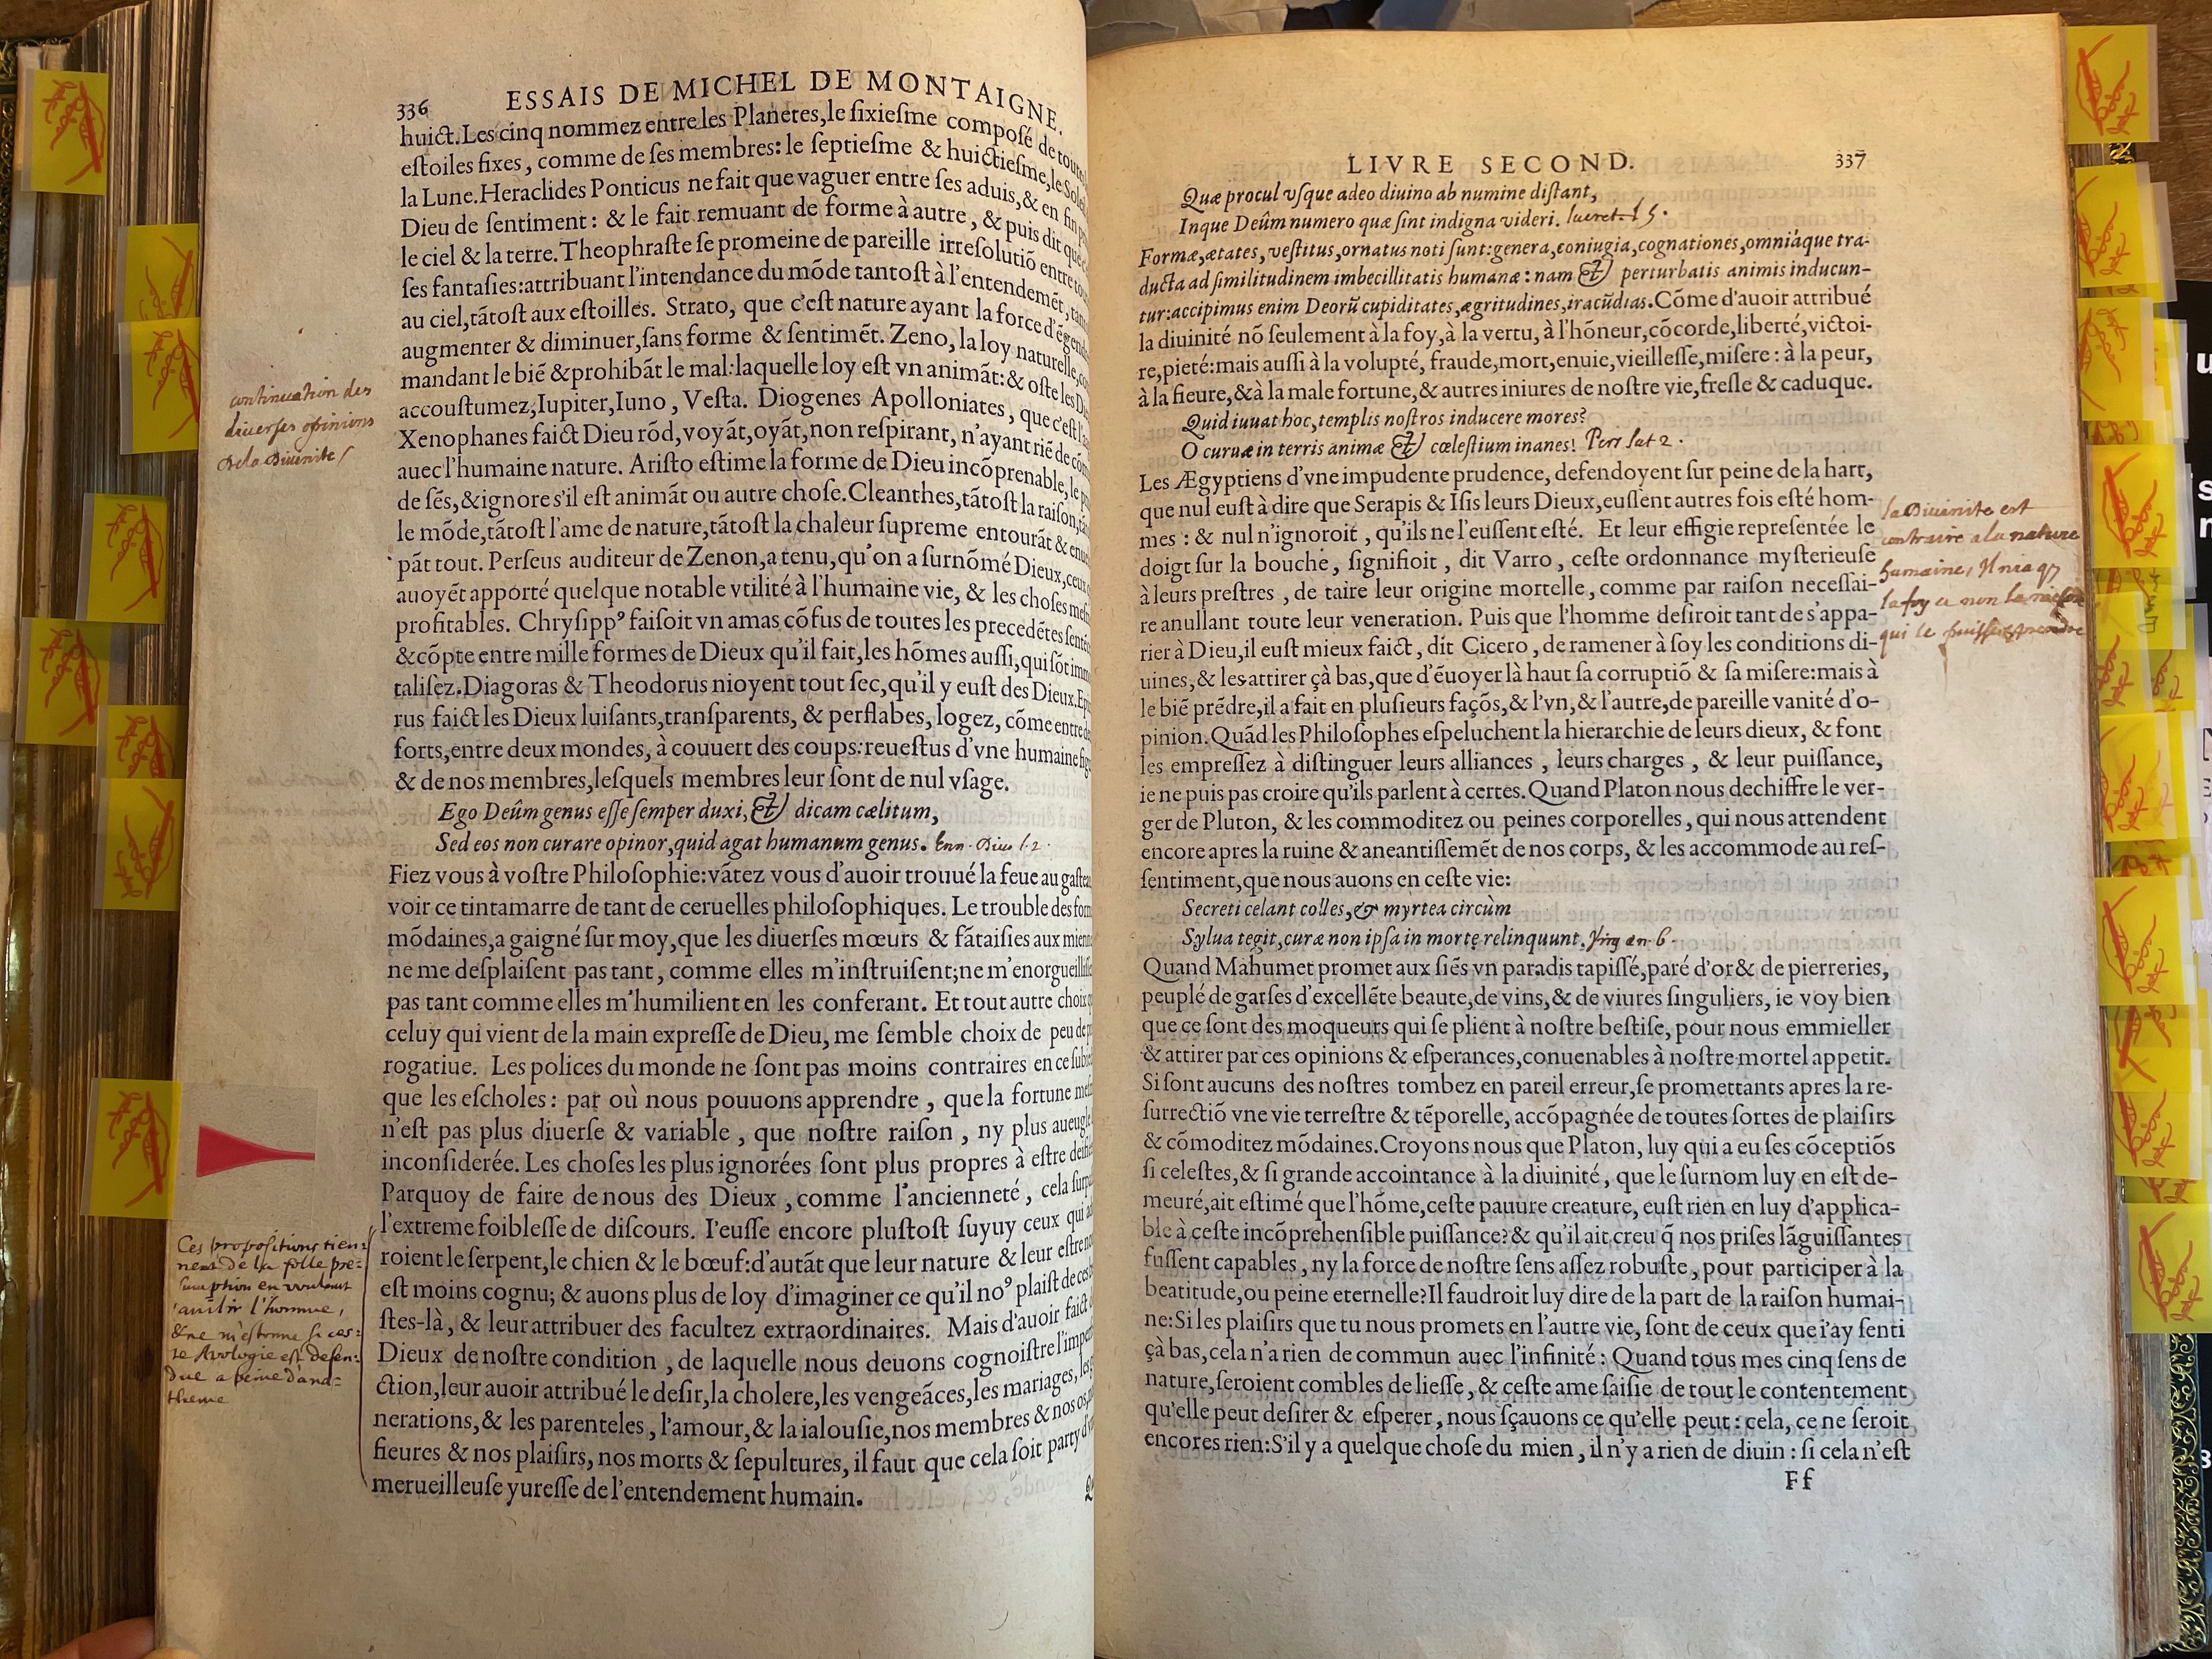 11. - p. 336-337, Livre II. Les Essais, 1595. Exemplaire Laval.